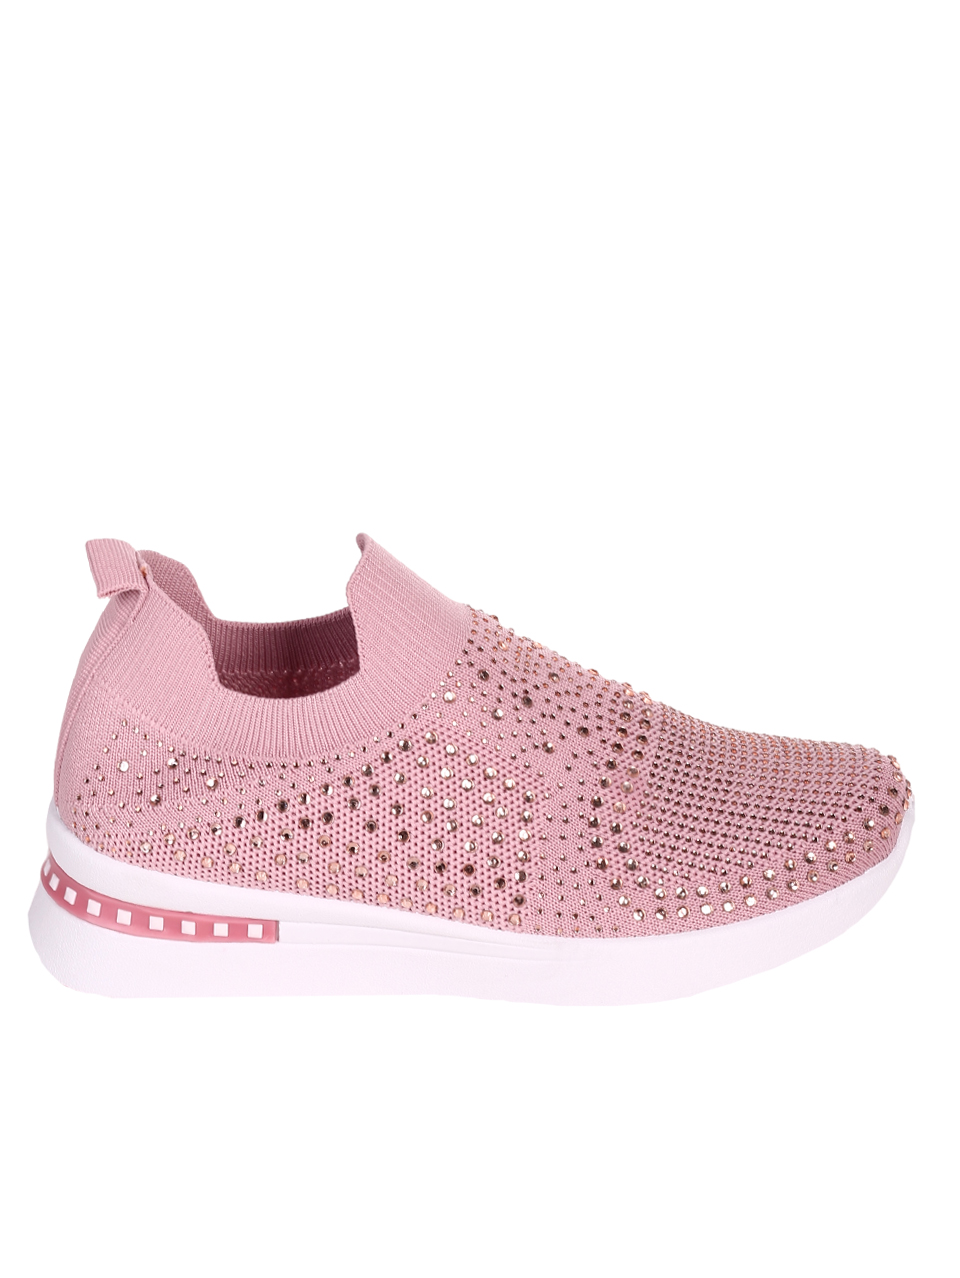 Ежедневни дамски обувки с декоративни камъни в розво 3U-23042 pink